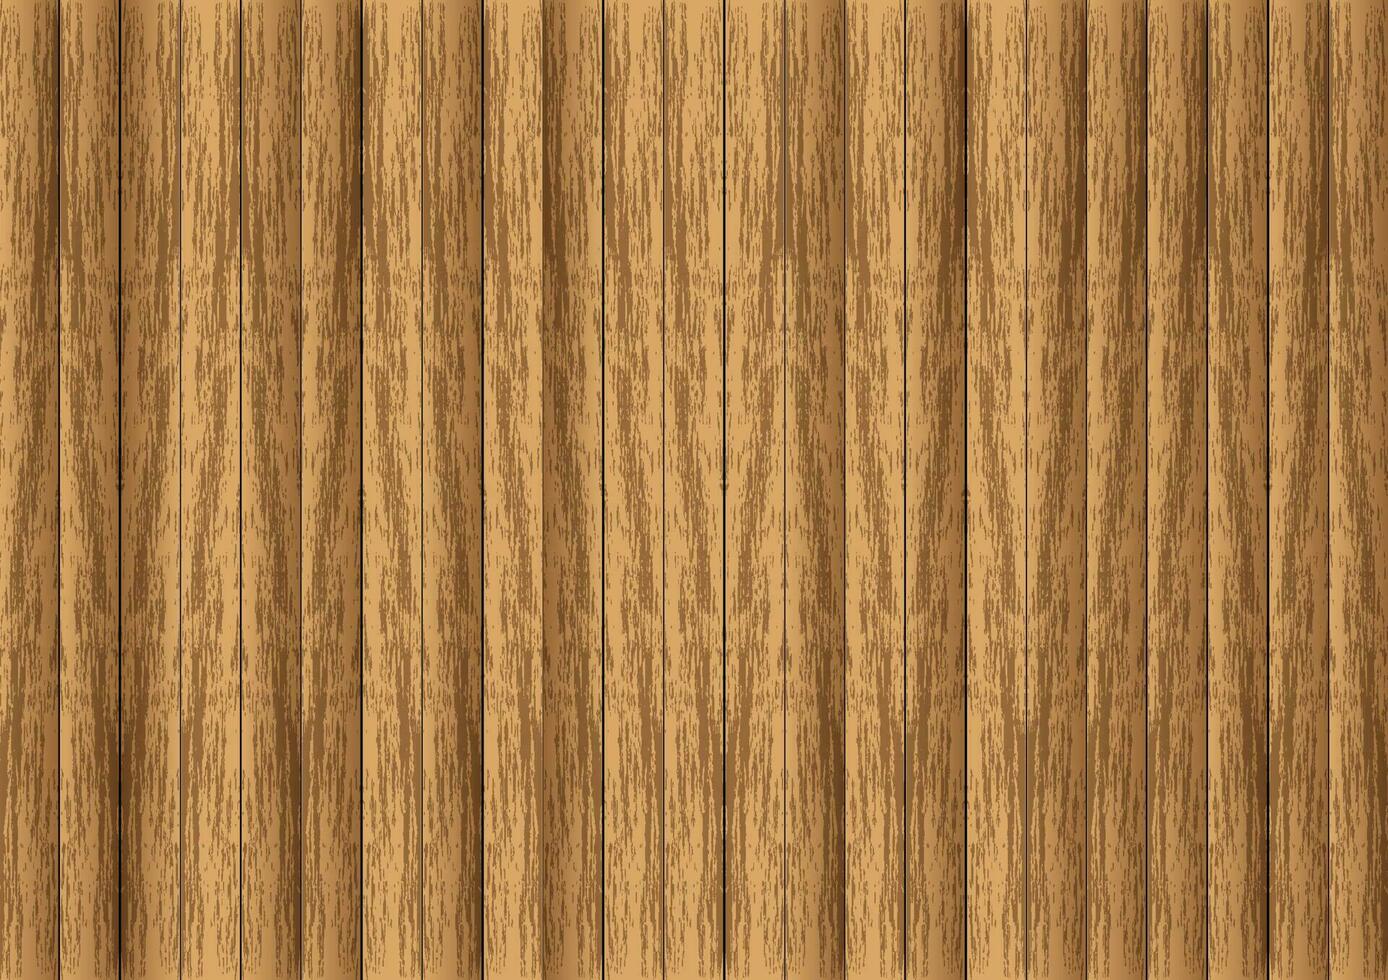 natürlich Holz Textur Vektor. abstrakt hölzern Muster Hintergrund. elegant Material Bauholz Oberfläche Illustration. Boden, Wand, Möbel Innere Design zu verwenden. vektor